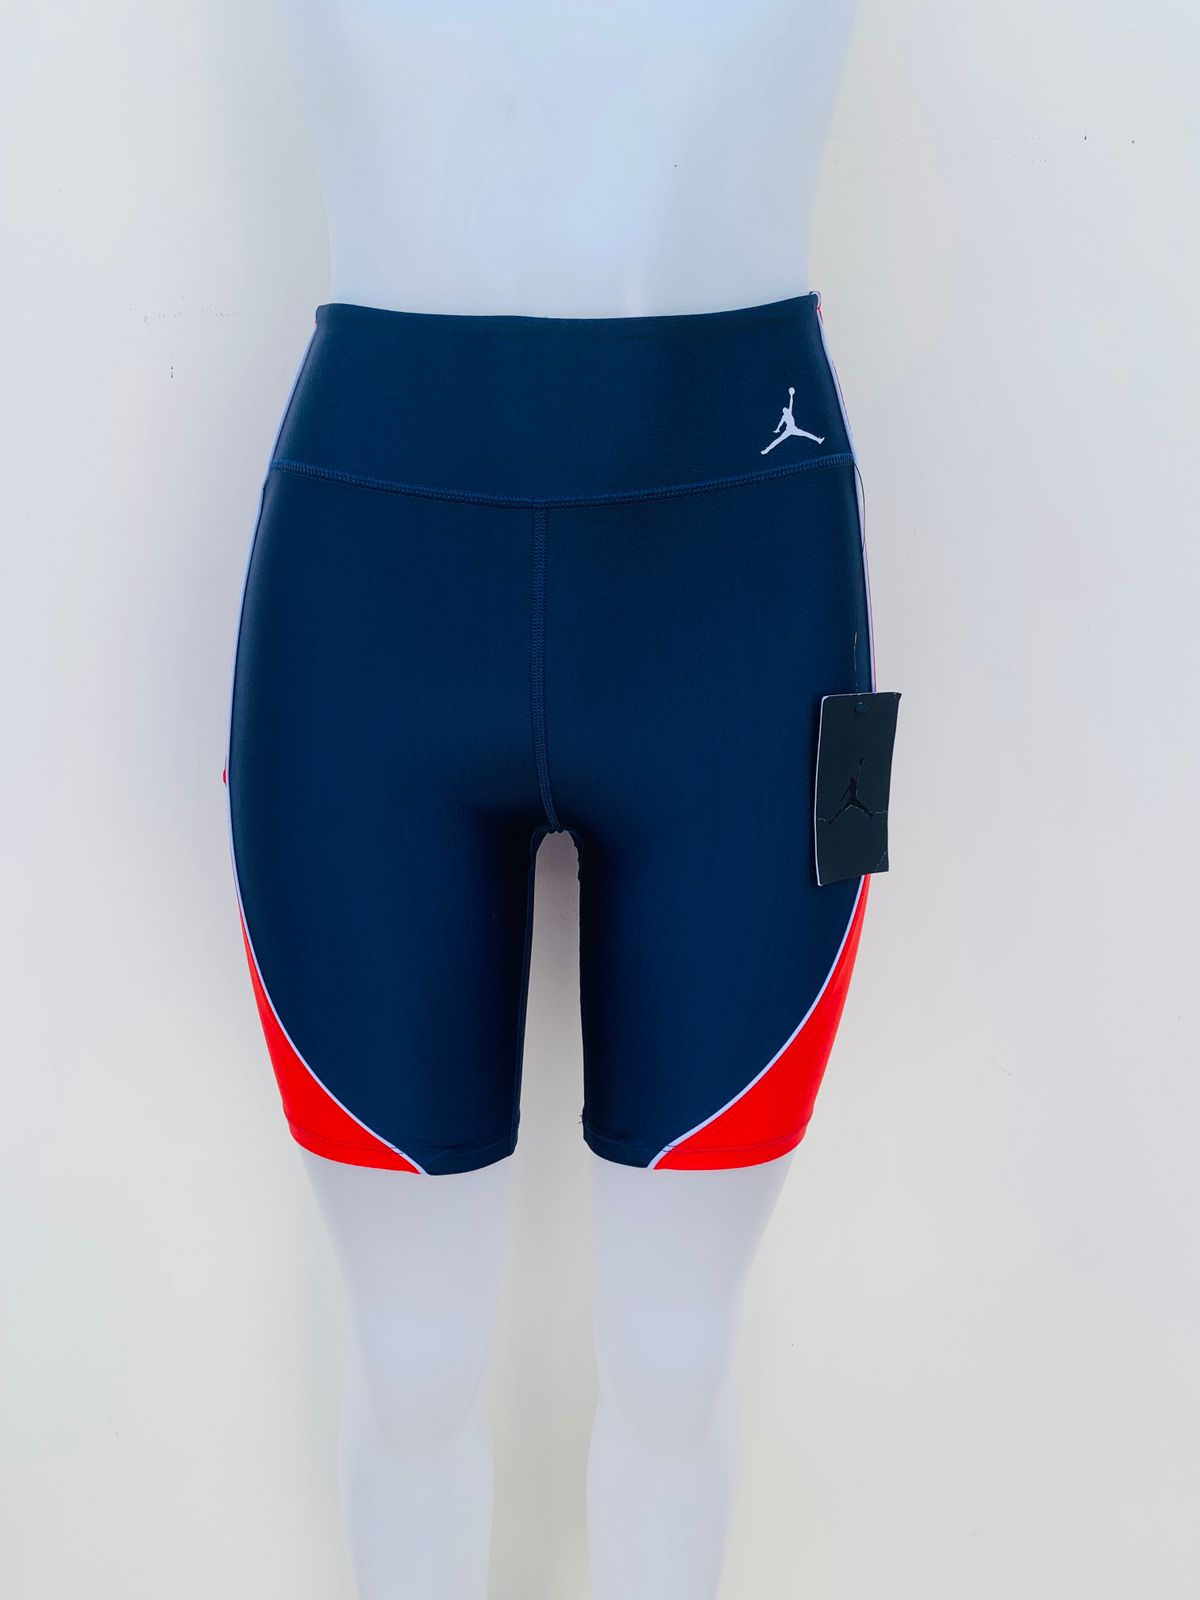 Legging/ Licra JORDAN original, azul marino con rayas rojas en los lados y pequeño logotipo de la marca en un lado en color blanco.